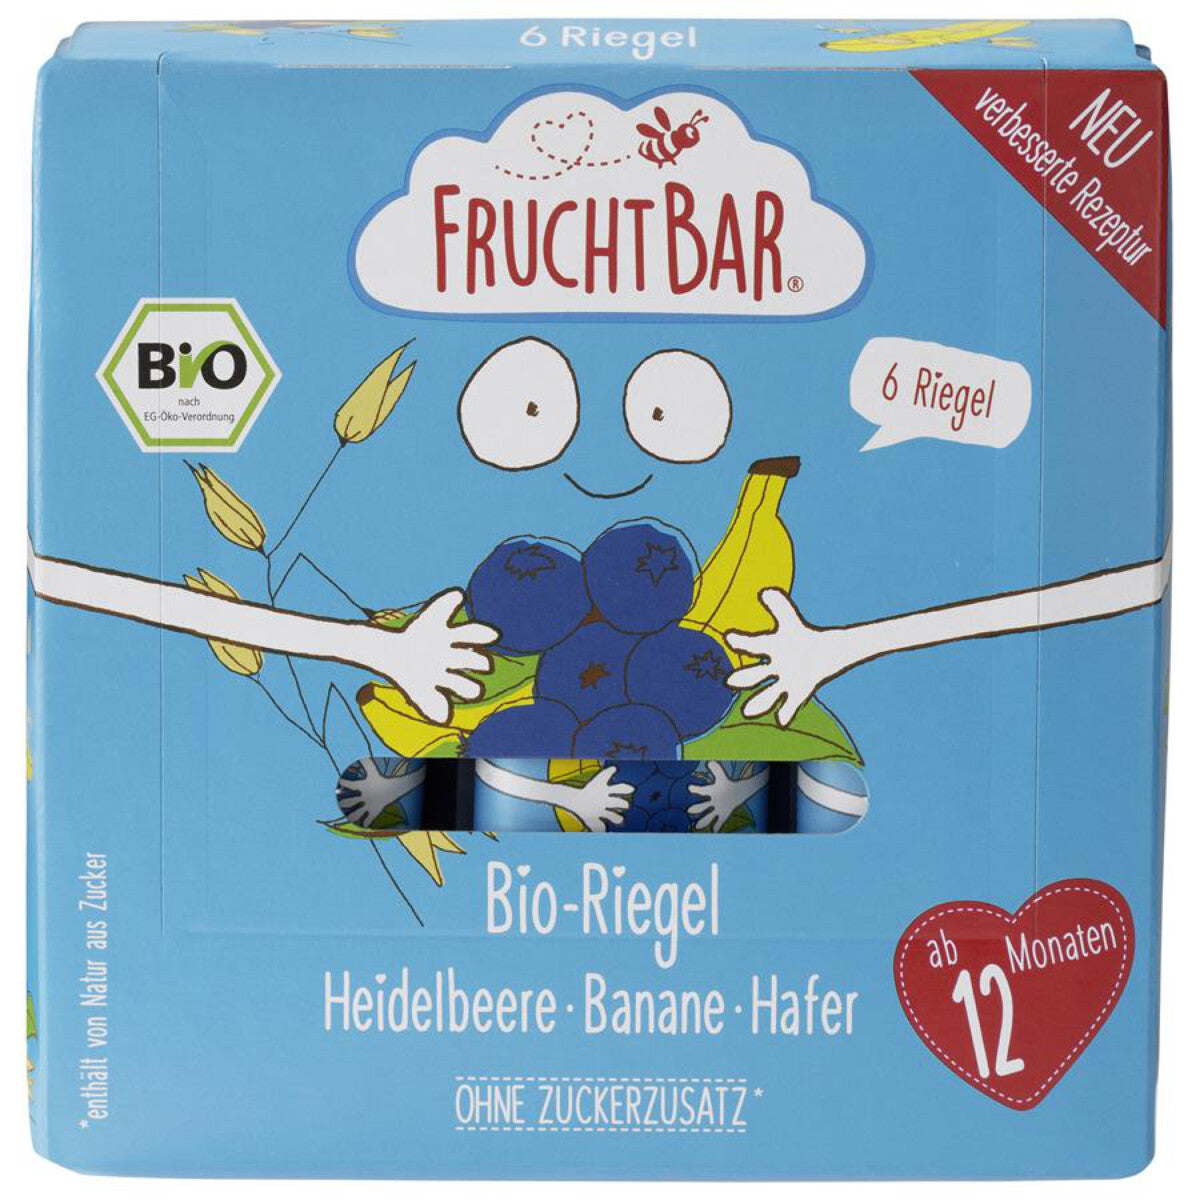 FRUCHTBAR Riegel Heidelbeere, Banane, Hafer - 138 g